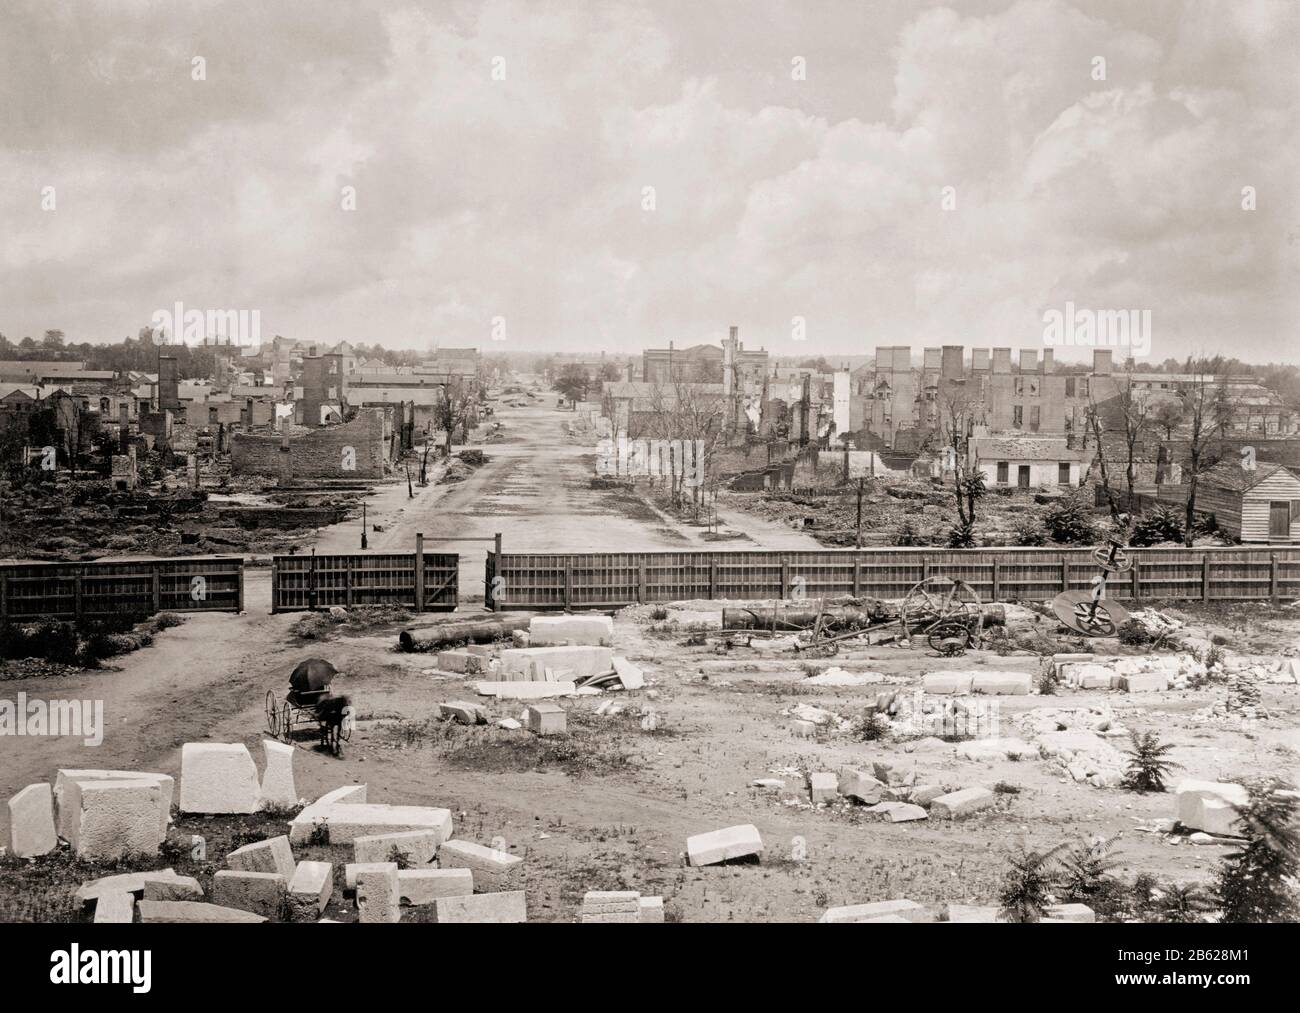 Columbia, Caroline du Sud, États-Unis d'Amérique en février 1865 après la destruction d'une grande partie de la ville par le feu. Vu ici de la Maison d'État. Après une photo du photographe américain George N. Barnard, 1819 - 1902. Banque D'Images